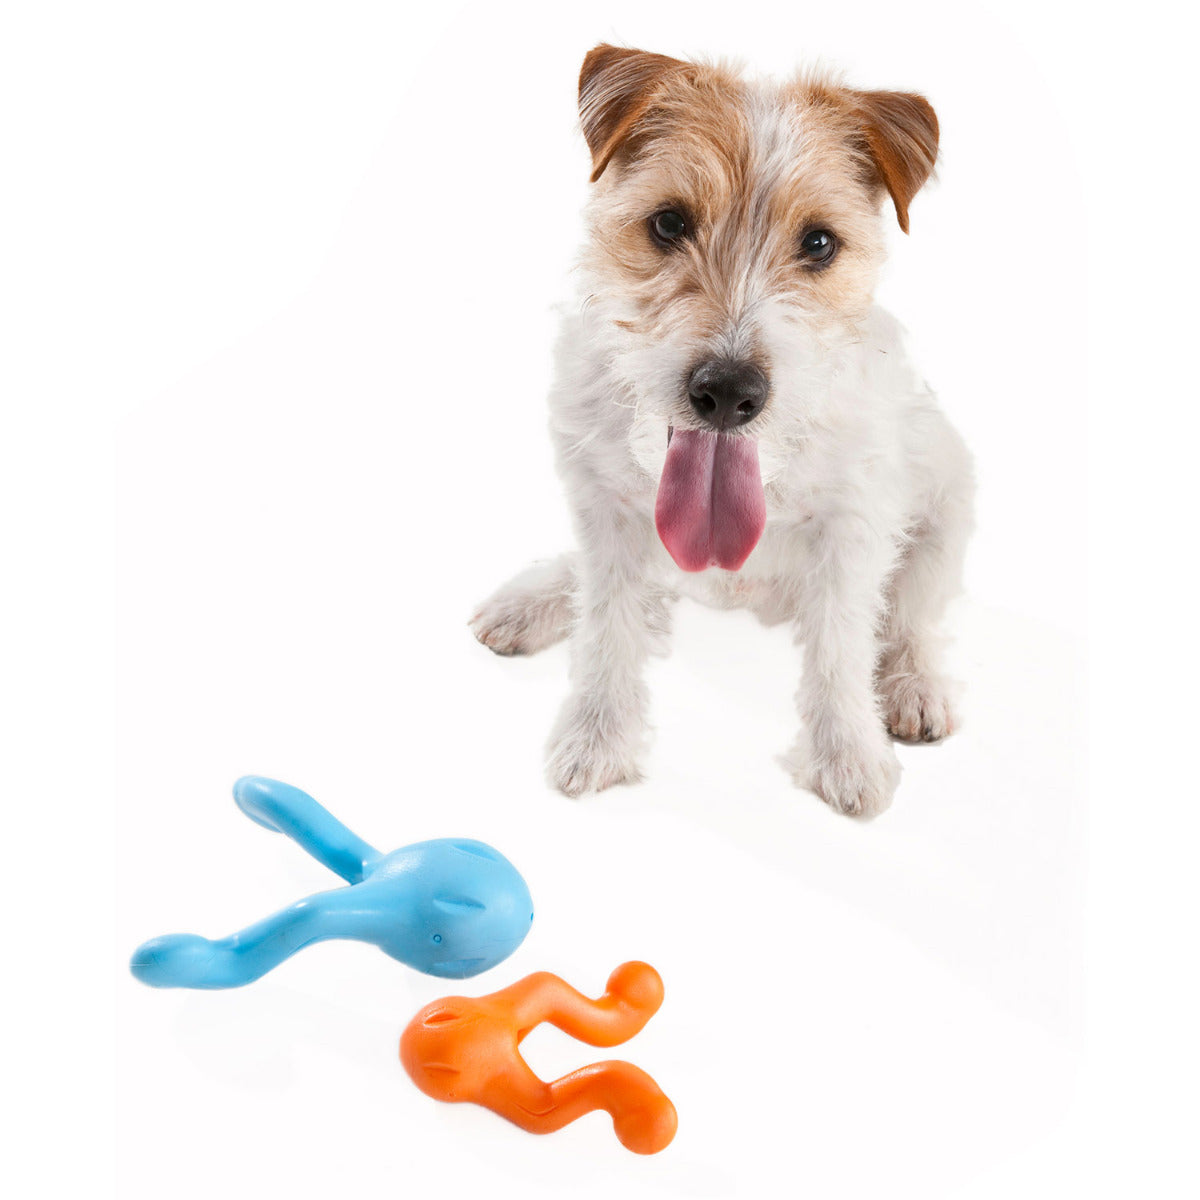 West Paw Tizzi Dog Toy - Large - Aqua Blue